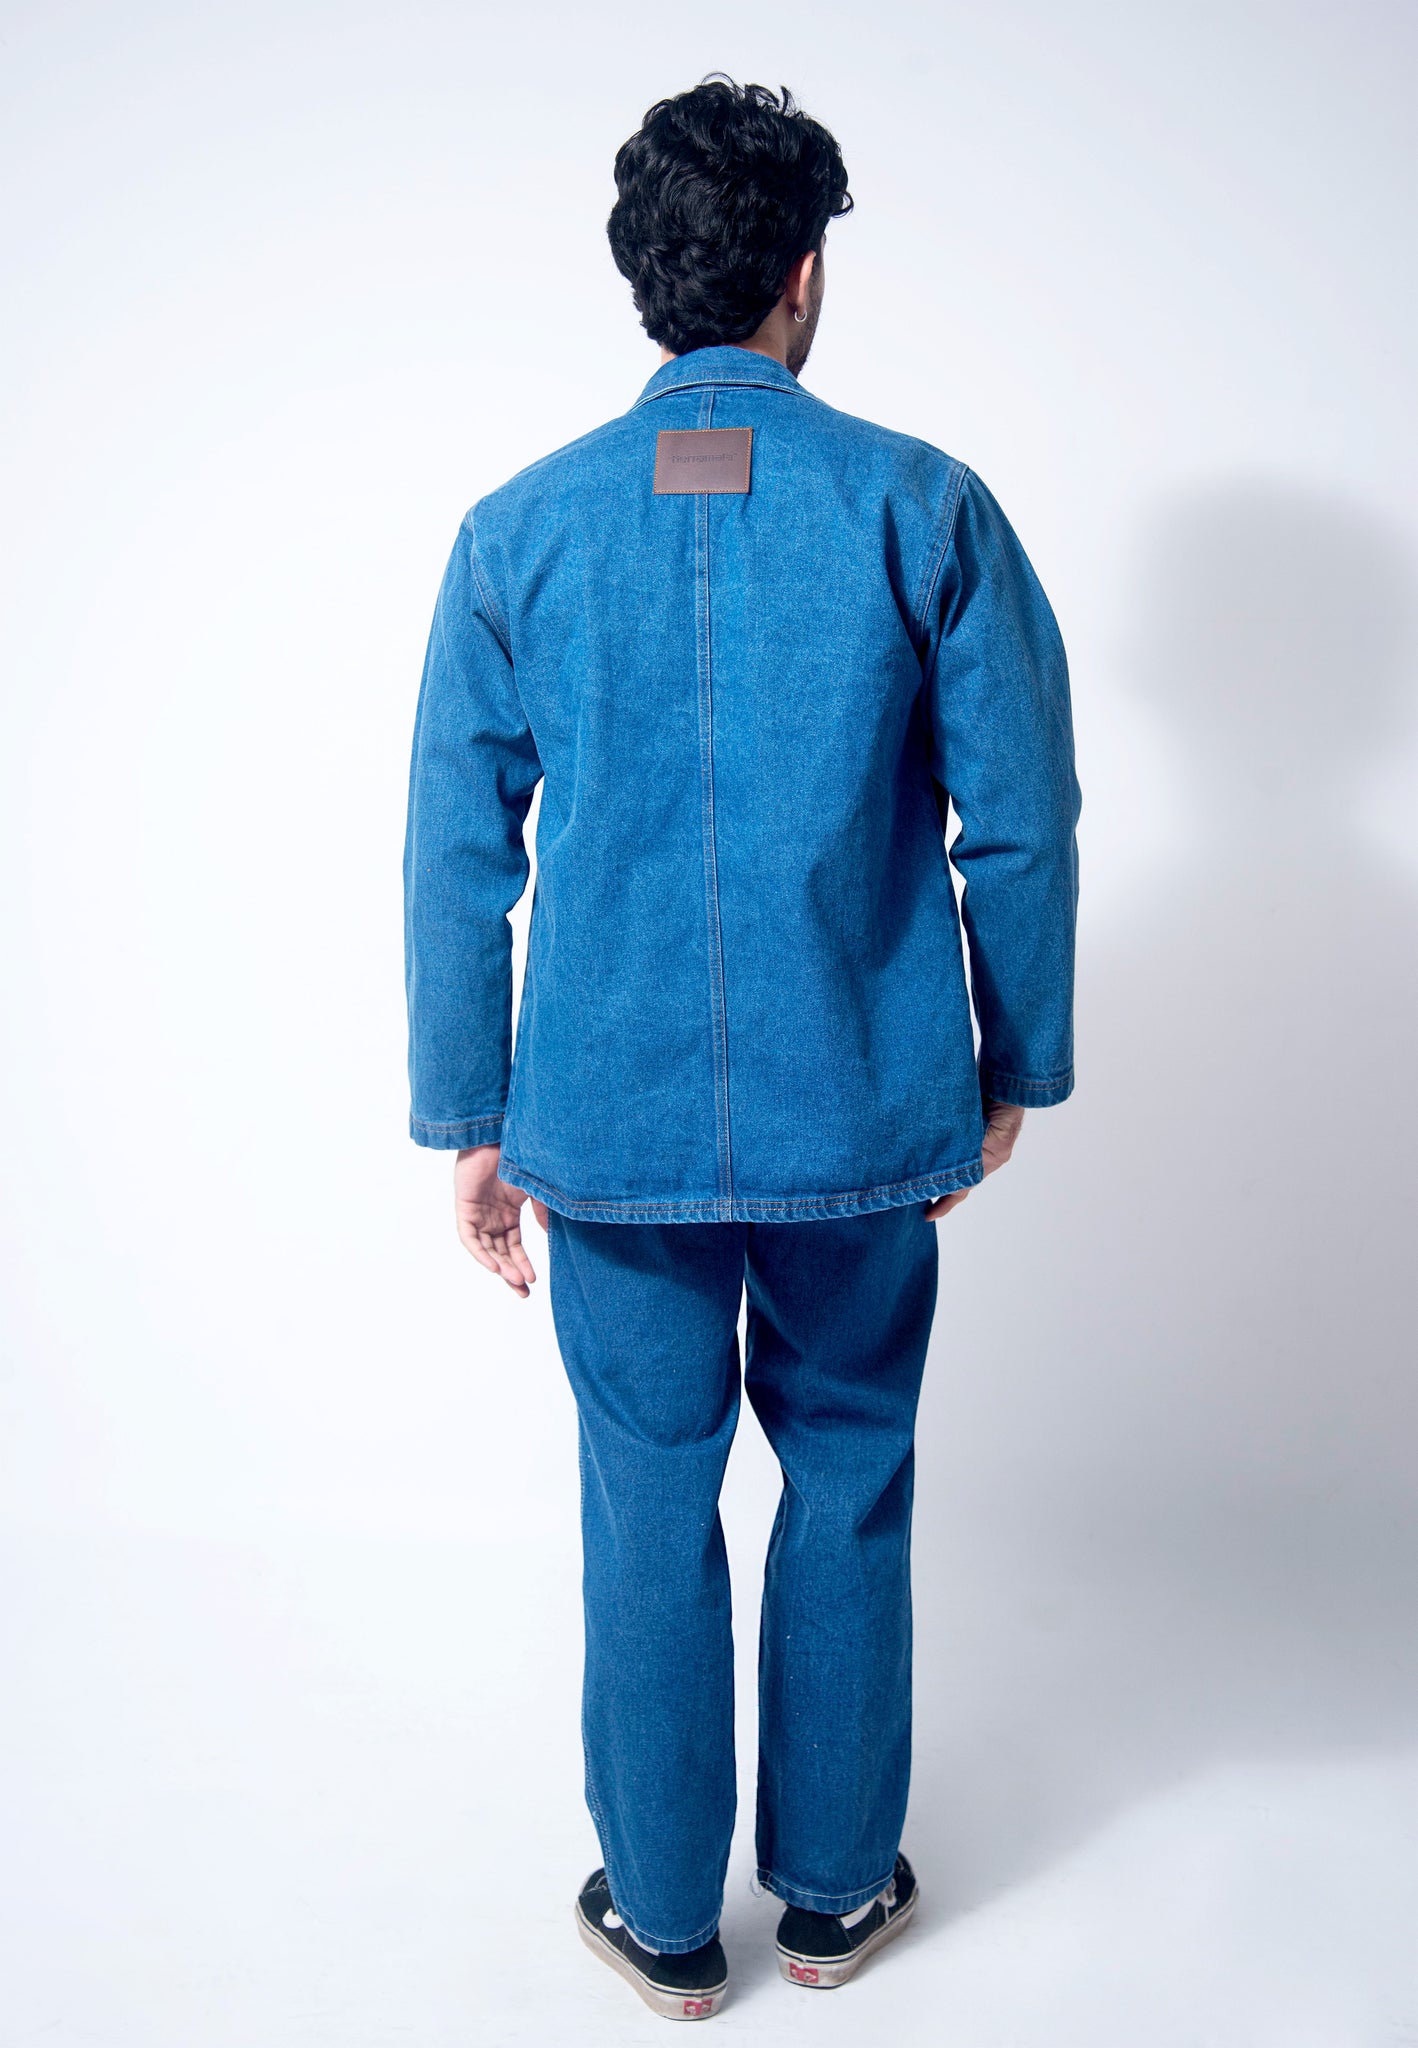 Basic denim jacket - 1 stone (classic blue)